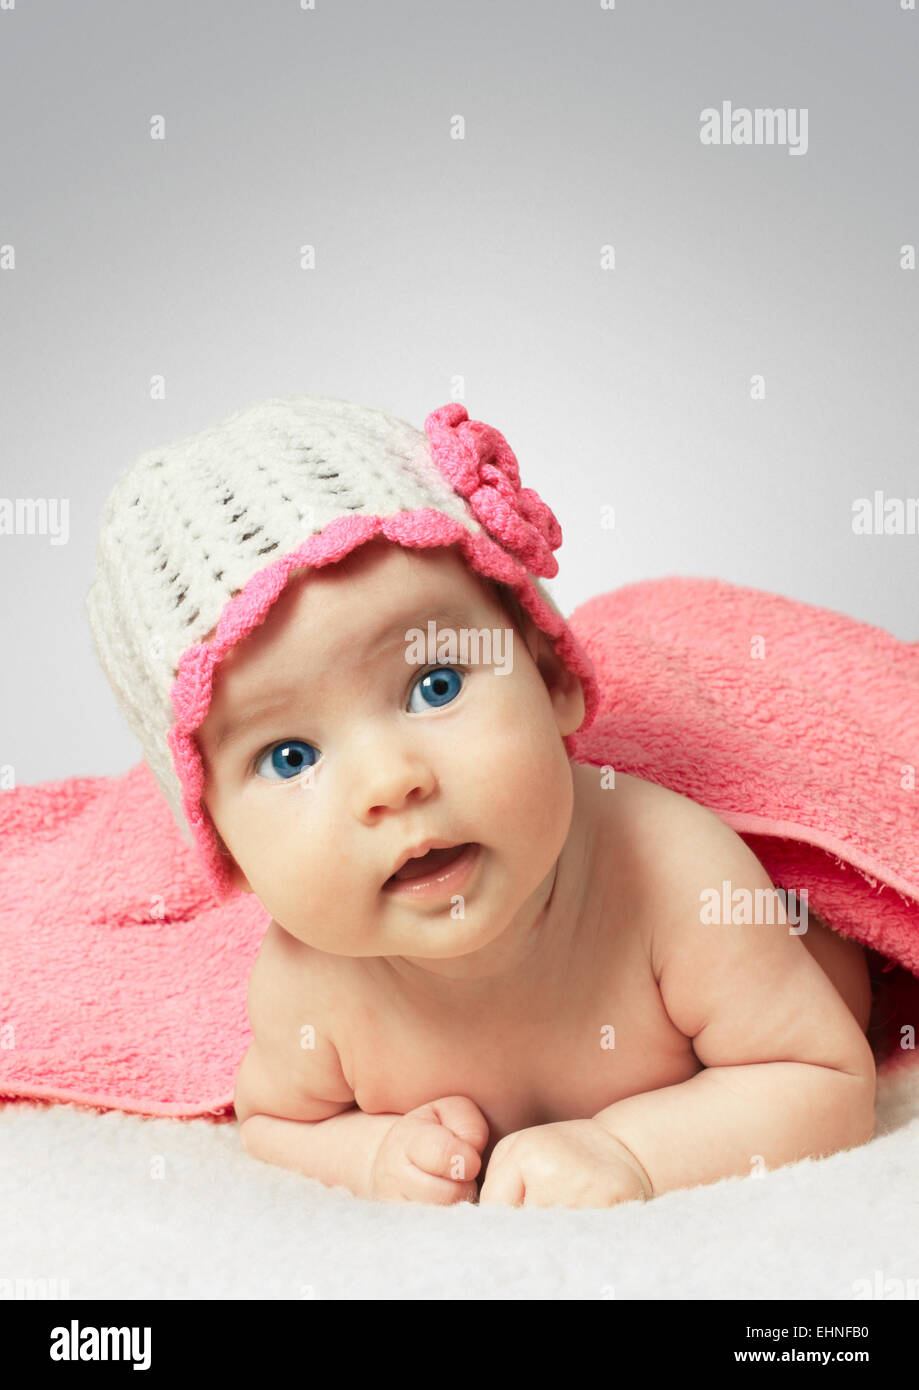 Drôle de petit bébé nouveau-né portant un chapeau avec serviette Banque D'Images